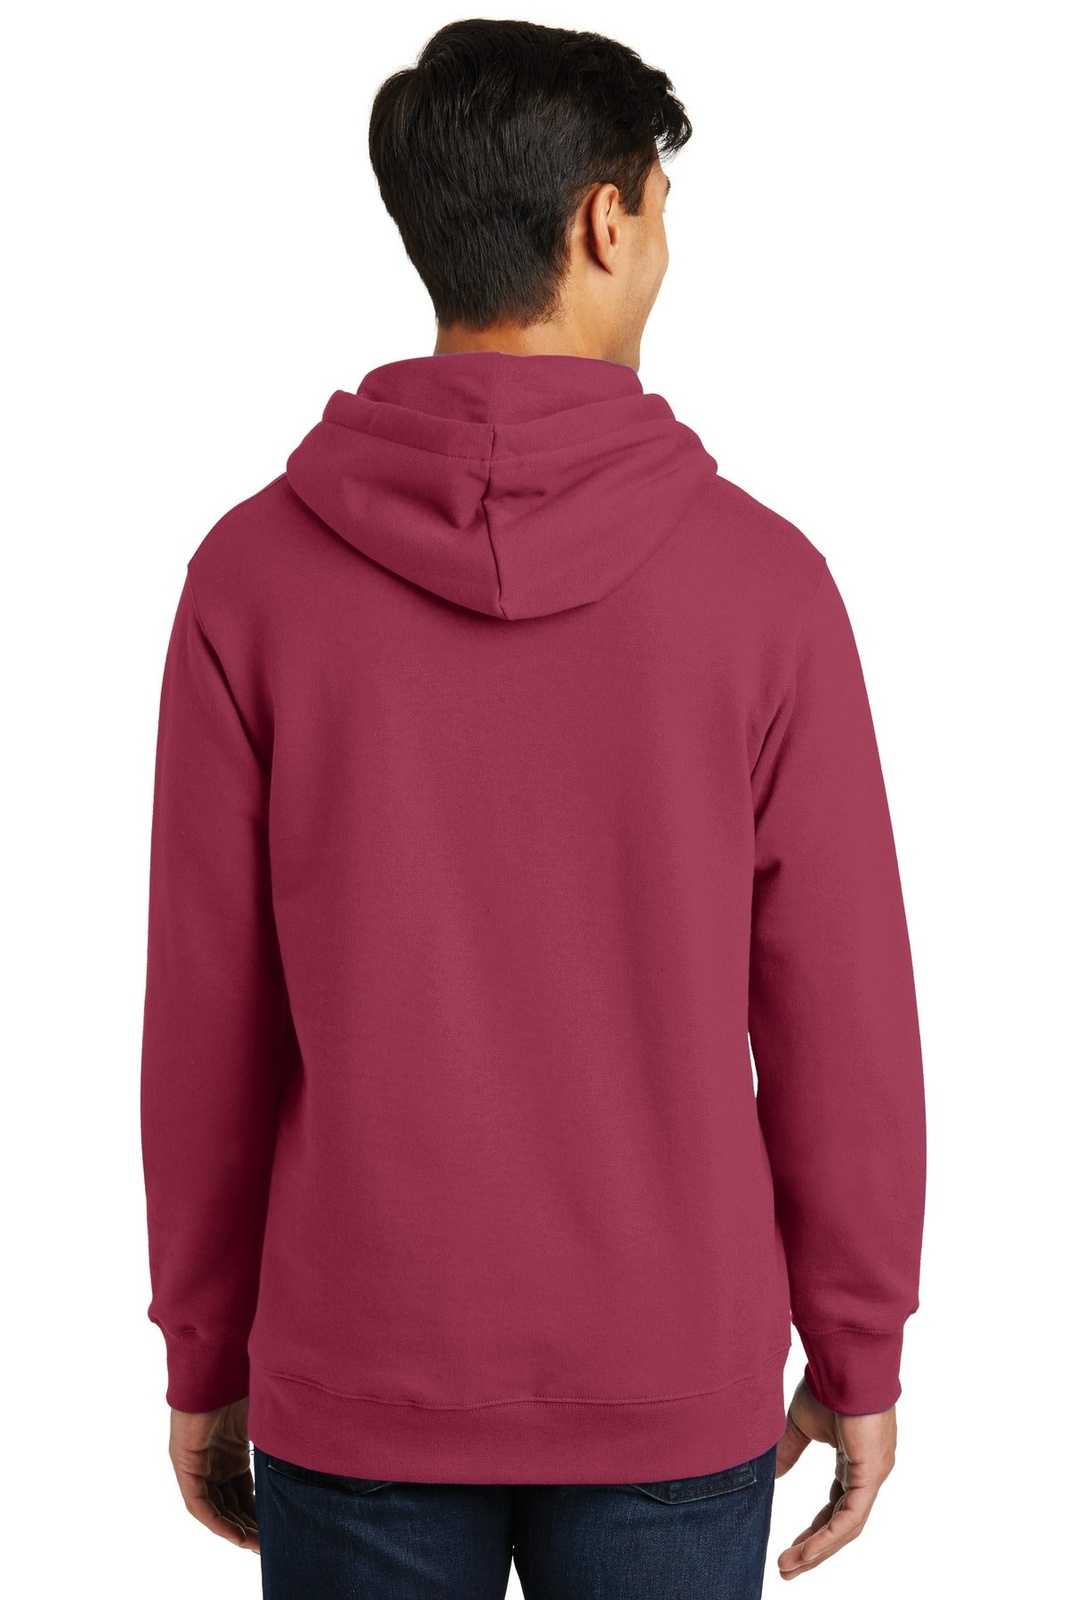 Port &amp; Company PC850H Fan Favorite Fleece Pullover Hooded Sweatshirt - Garnet - HIT a Double - 2